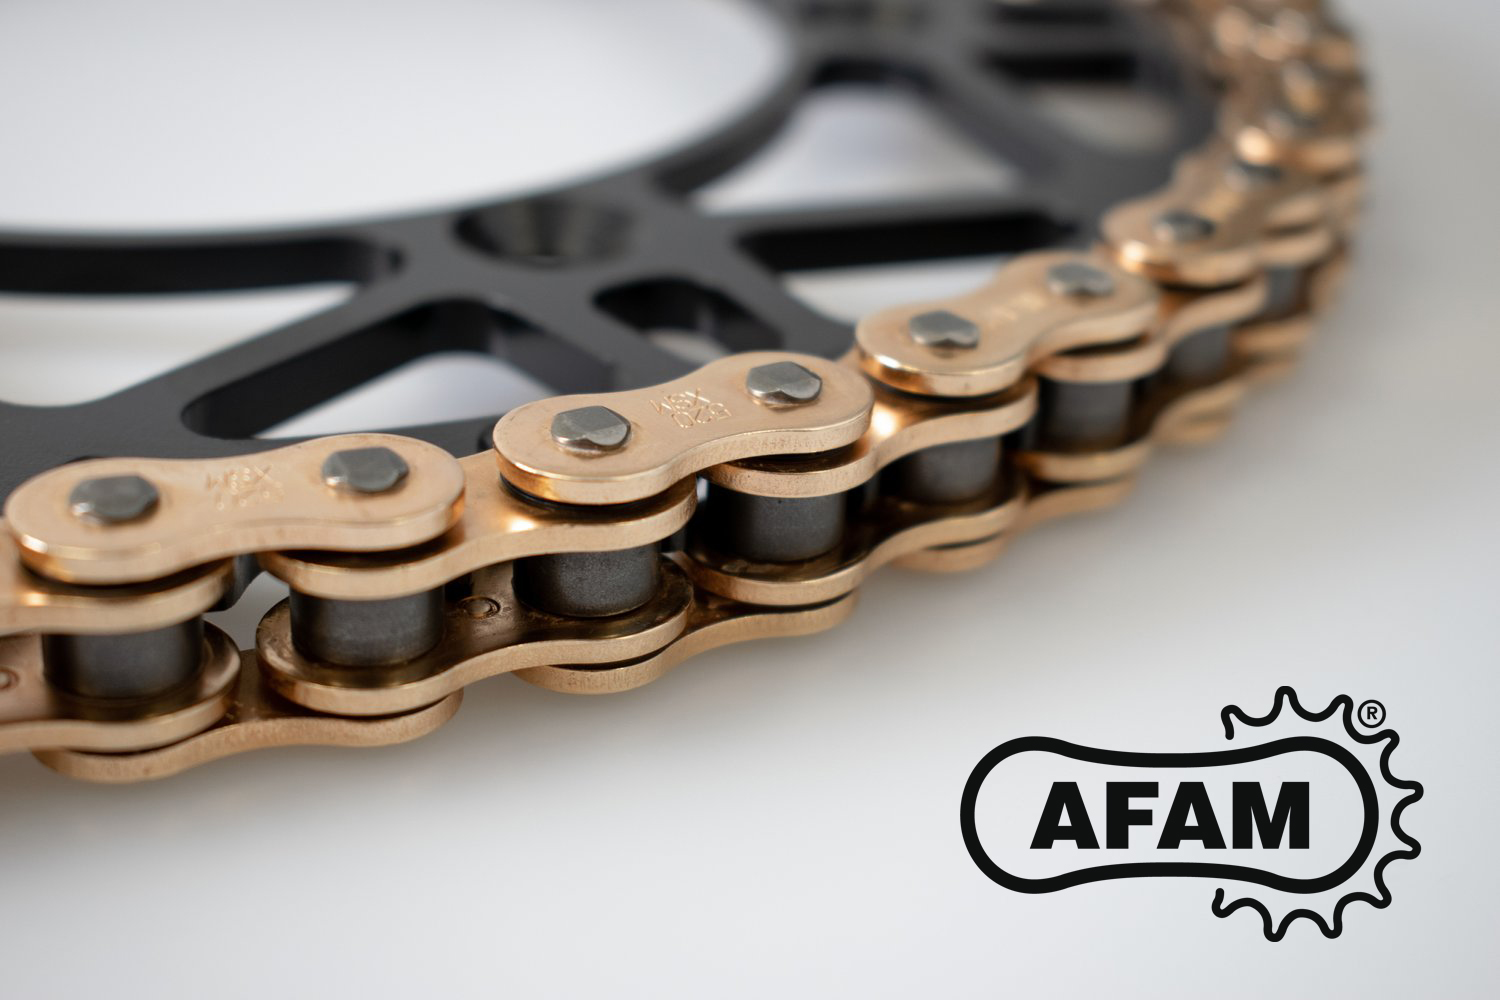 Sei alla ricerca di prestazioni e leggerezza? Il Kit AFAM 520 è la soluzione ideale!